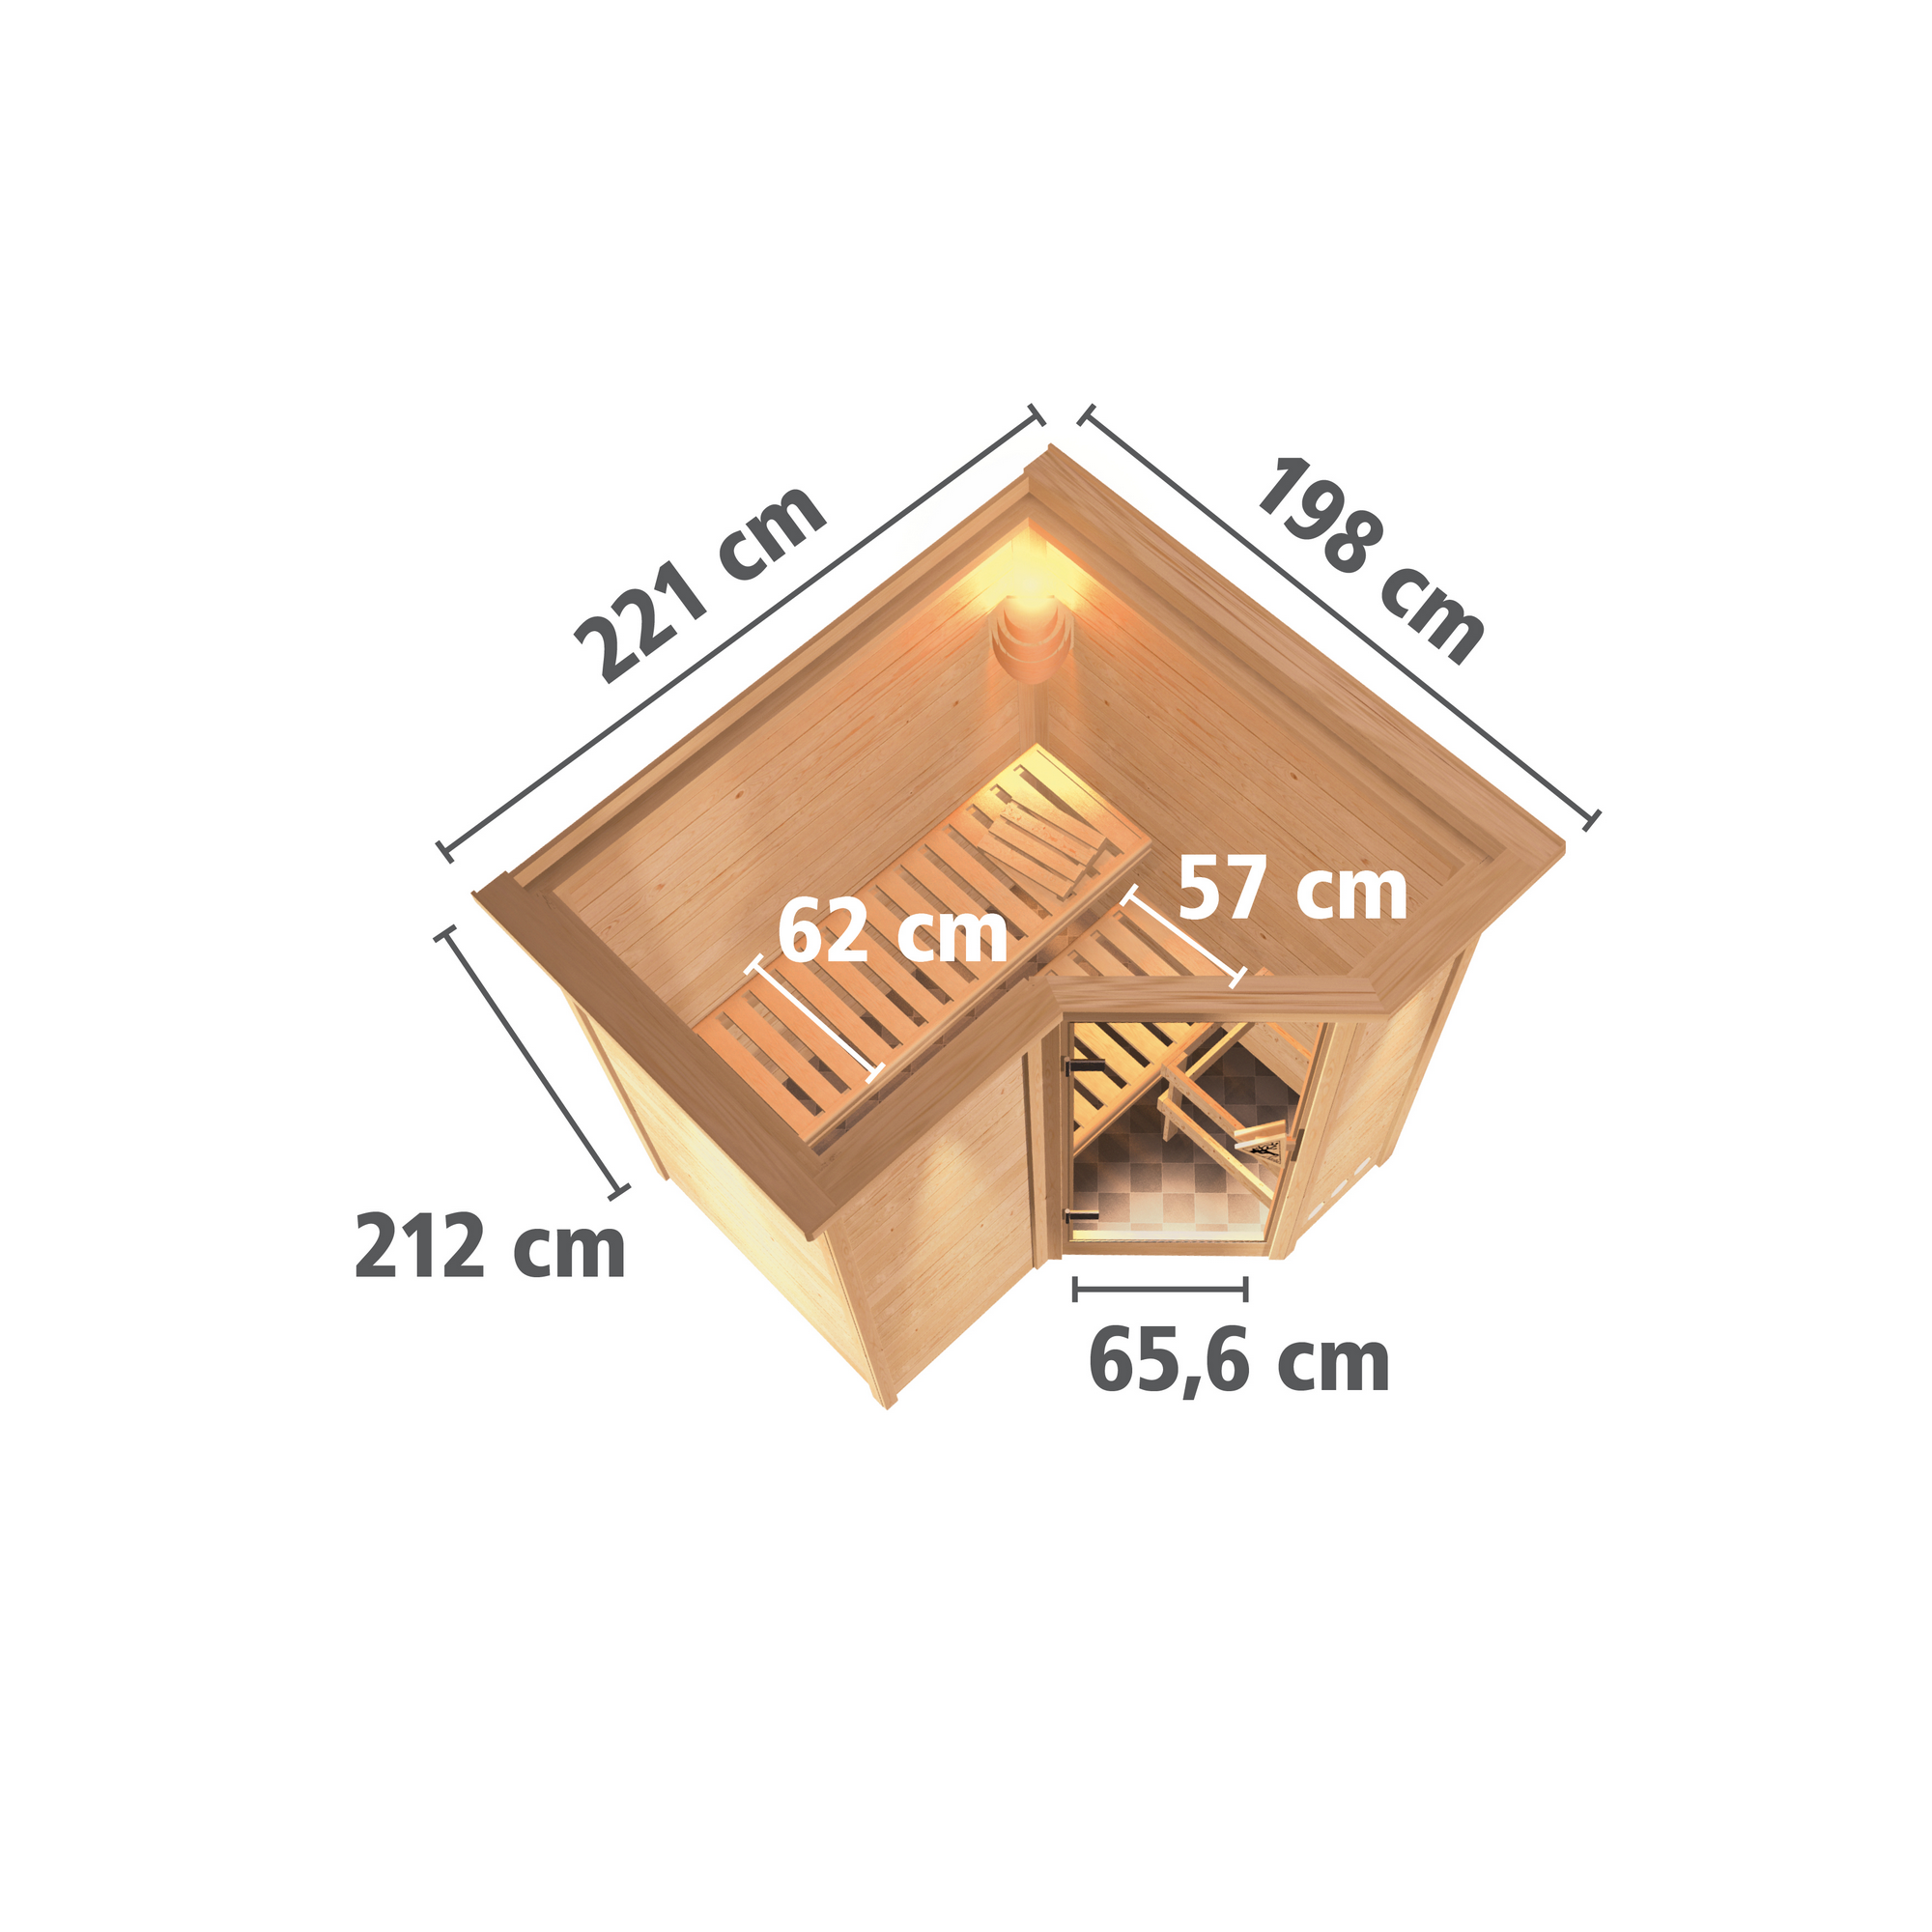 Massivholzsauna 'Perla 1' naturbelassen mit Kranz und graphitfarbener Tür mit Ofen 9kW integrierte Steuerung 221 x 198 x 212 cm + product picture